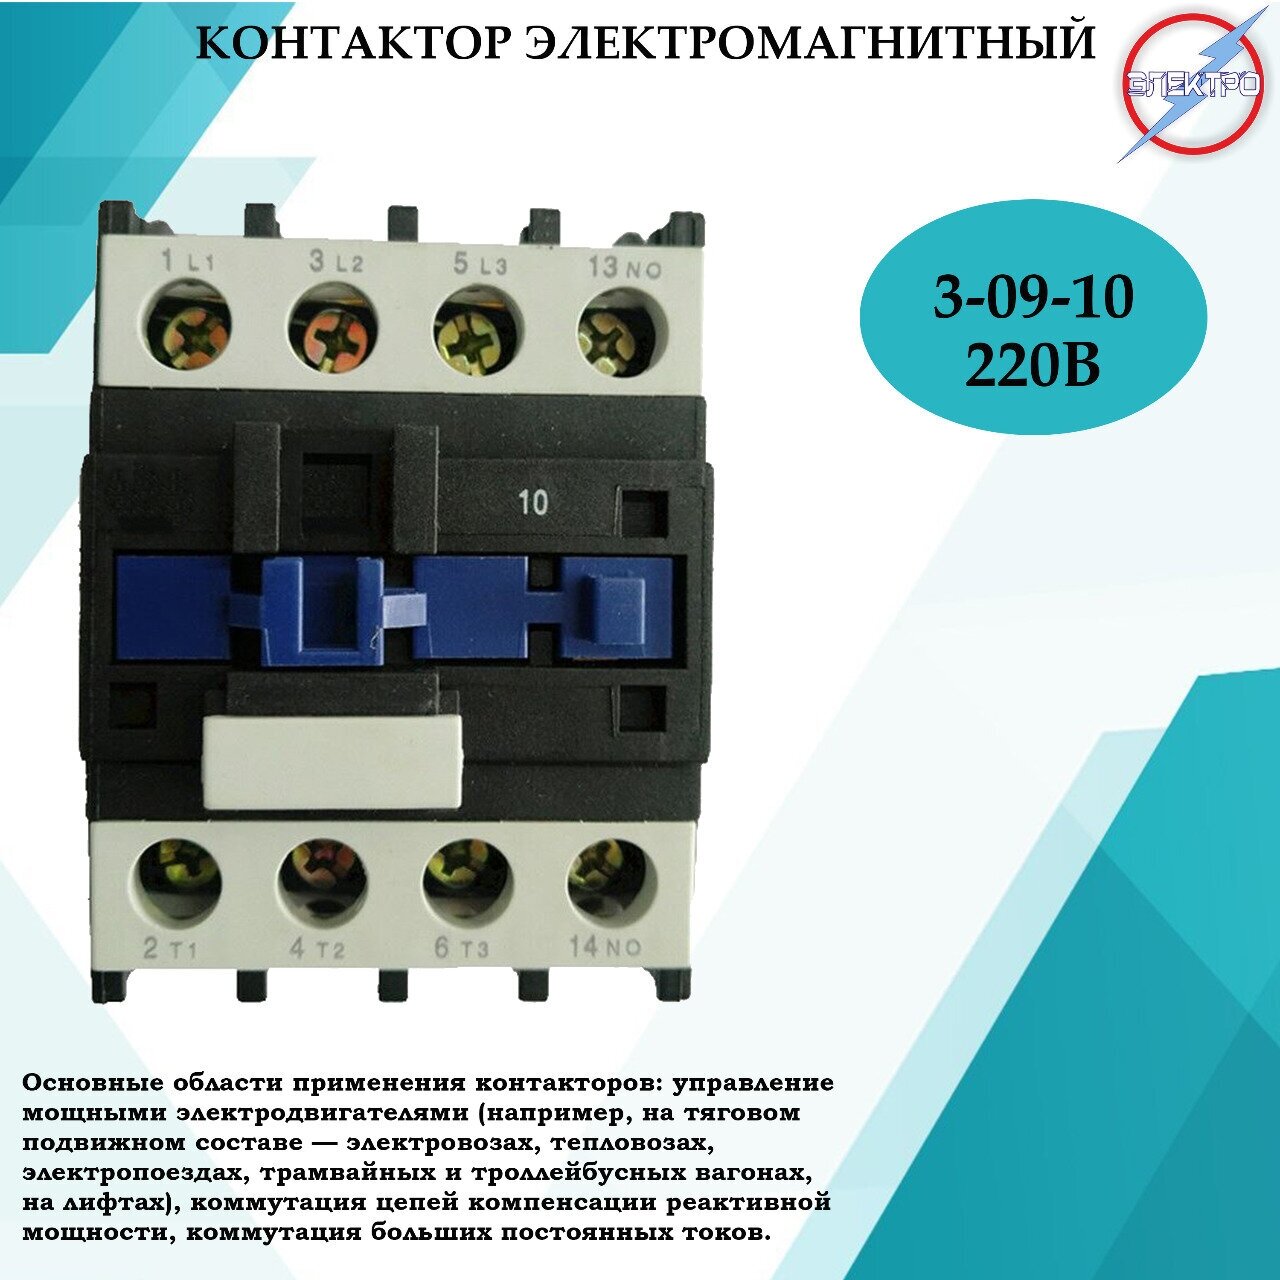 Контактор электромагнитный КМ 3 - 09 - 10 - 220В